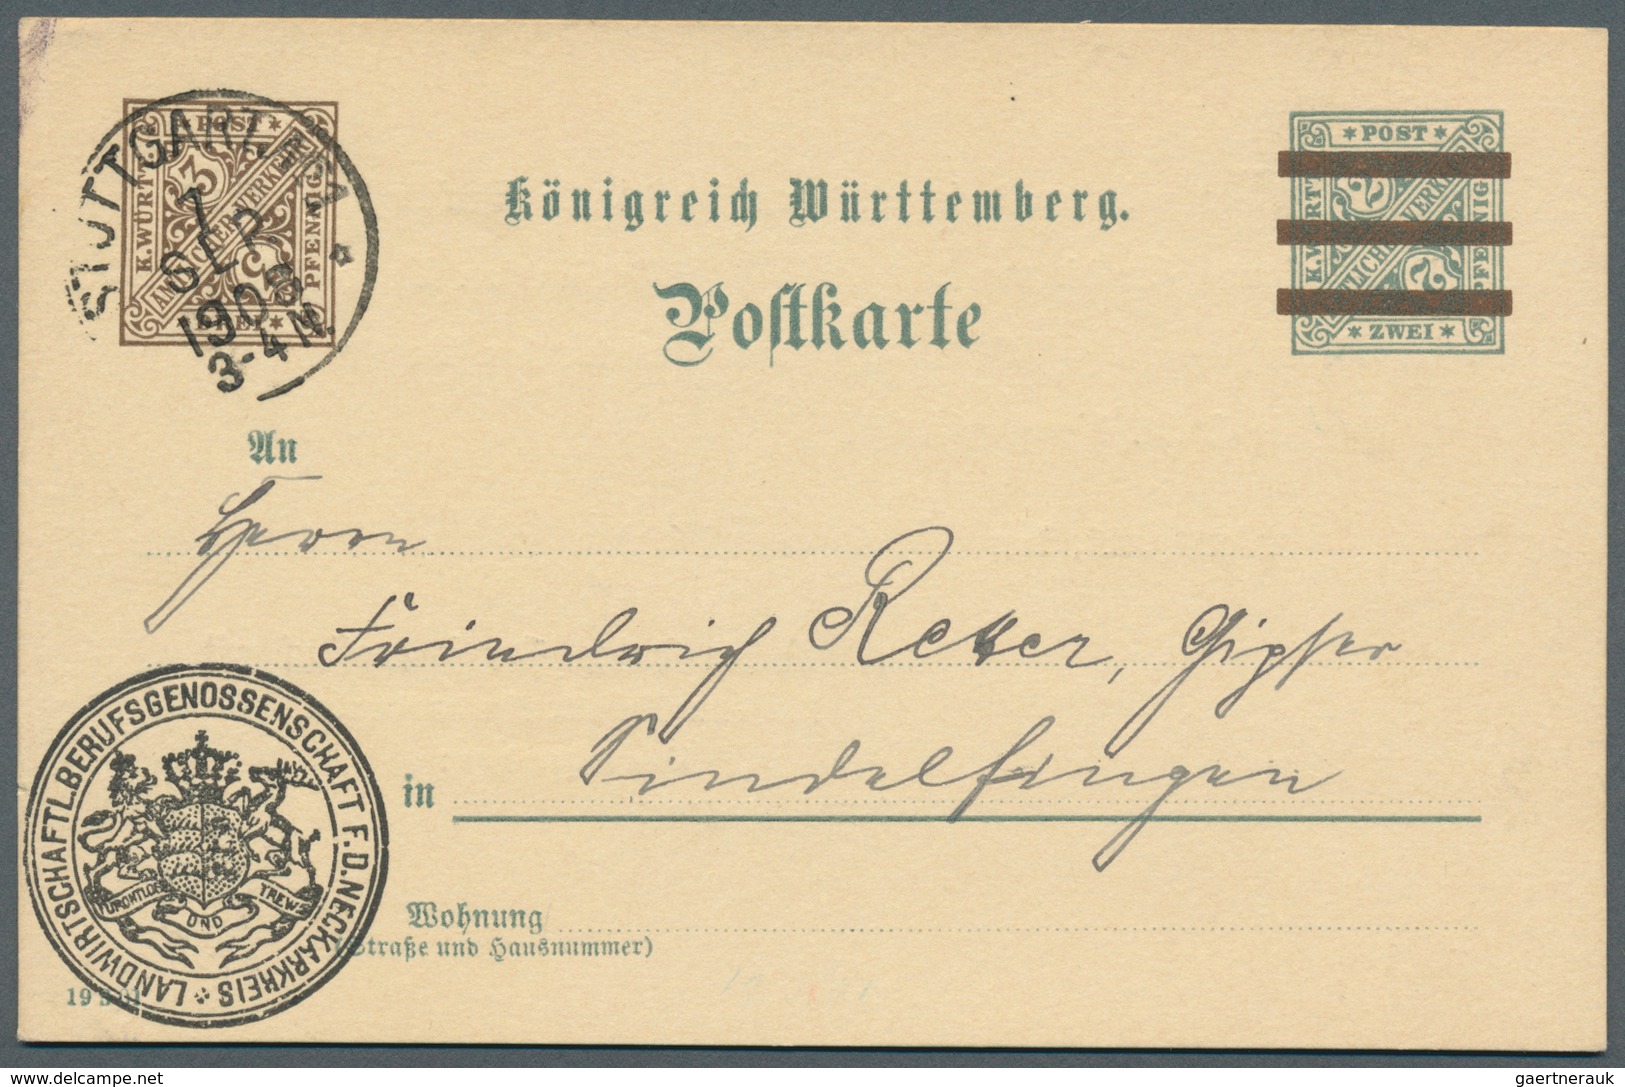 Württemberg - Ganzsachen: 1862/1920, sehr umfangreiche Sammlung ab U 1 bis DPB 67, insgesamt 807 nur